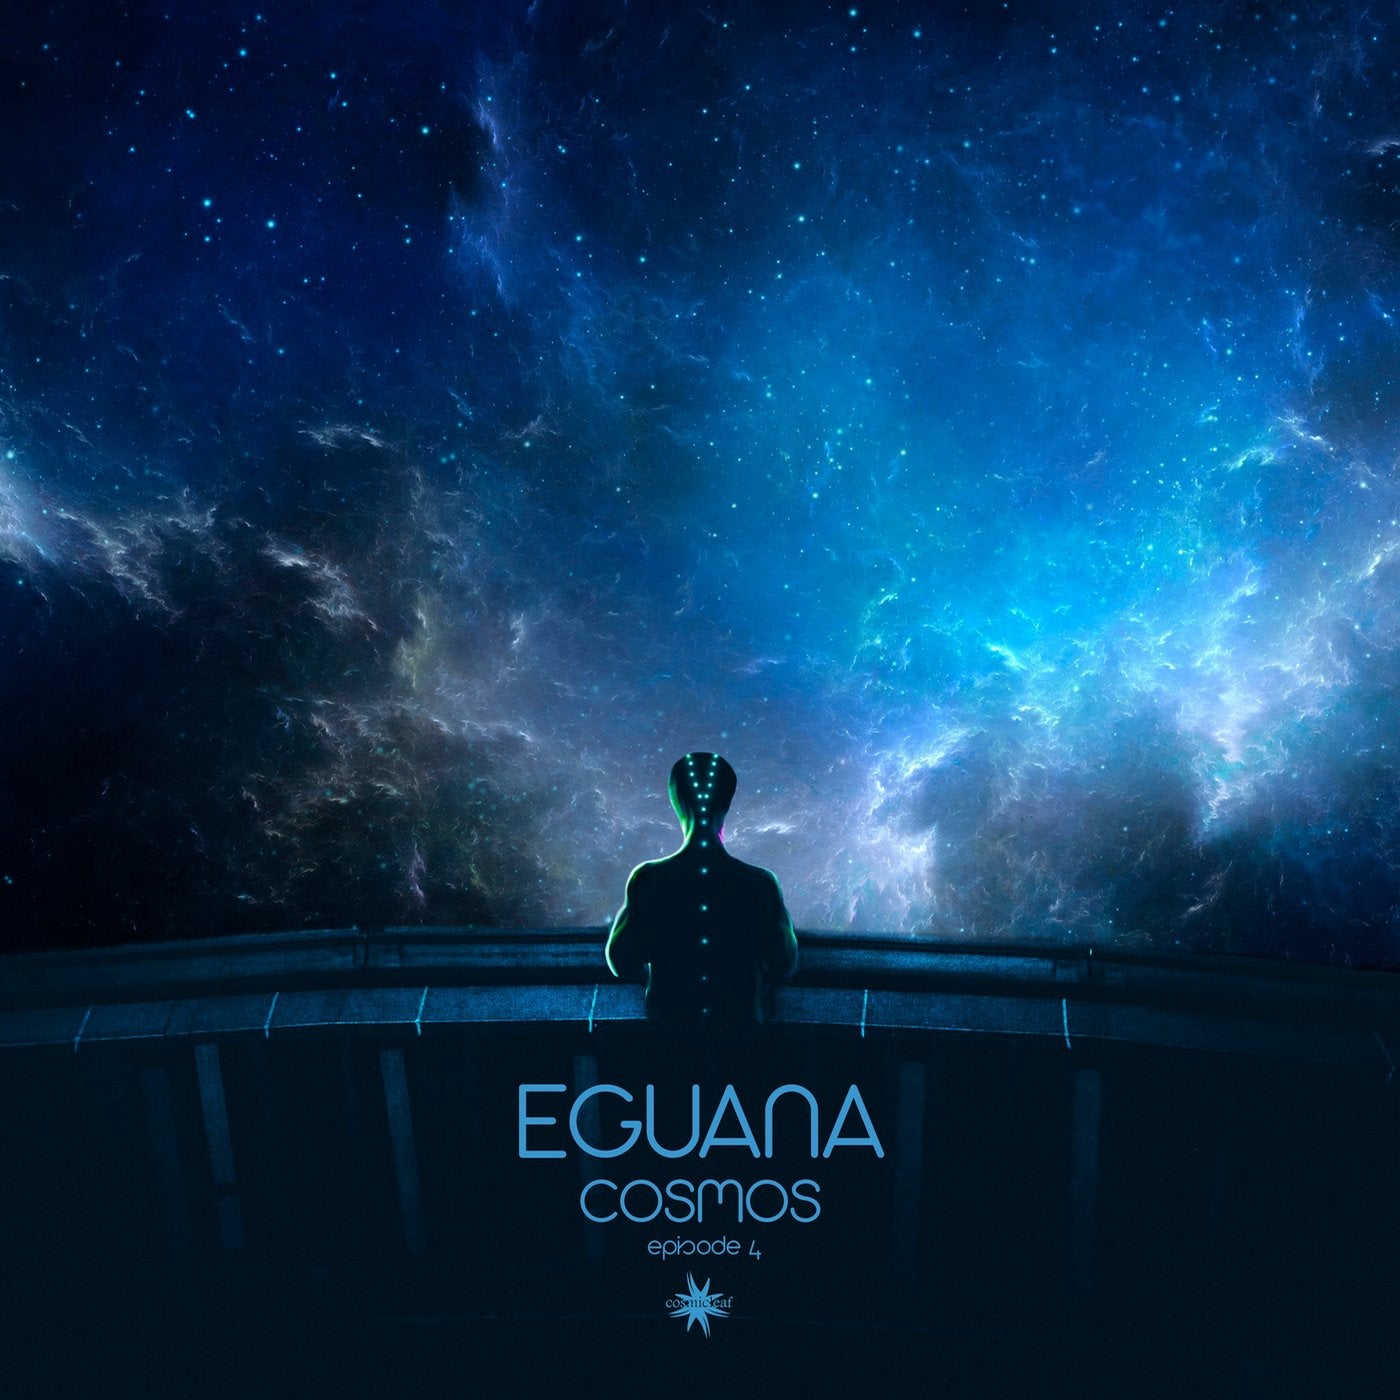 Скриптонит космос mp3. Eguana. Iguana Cosmos Episode 4. Eguana музыкант. Cosmos альбомы.